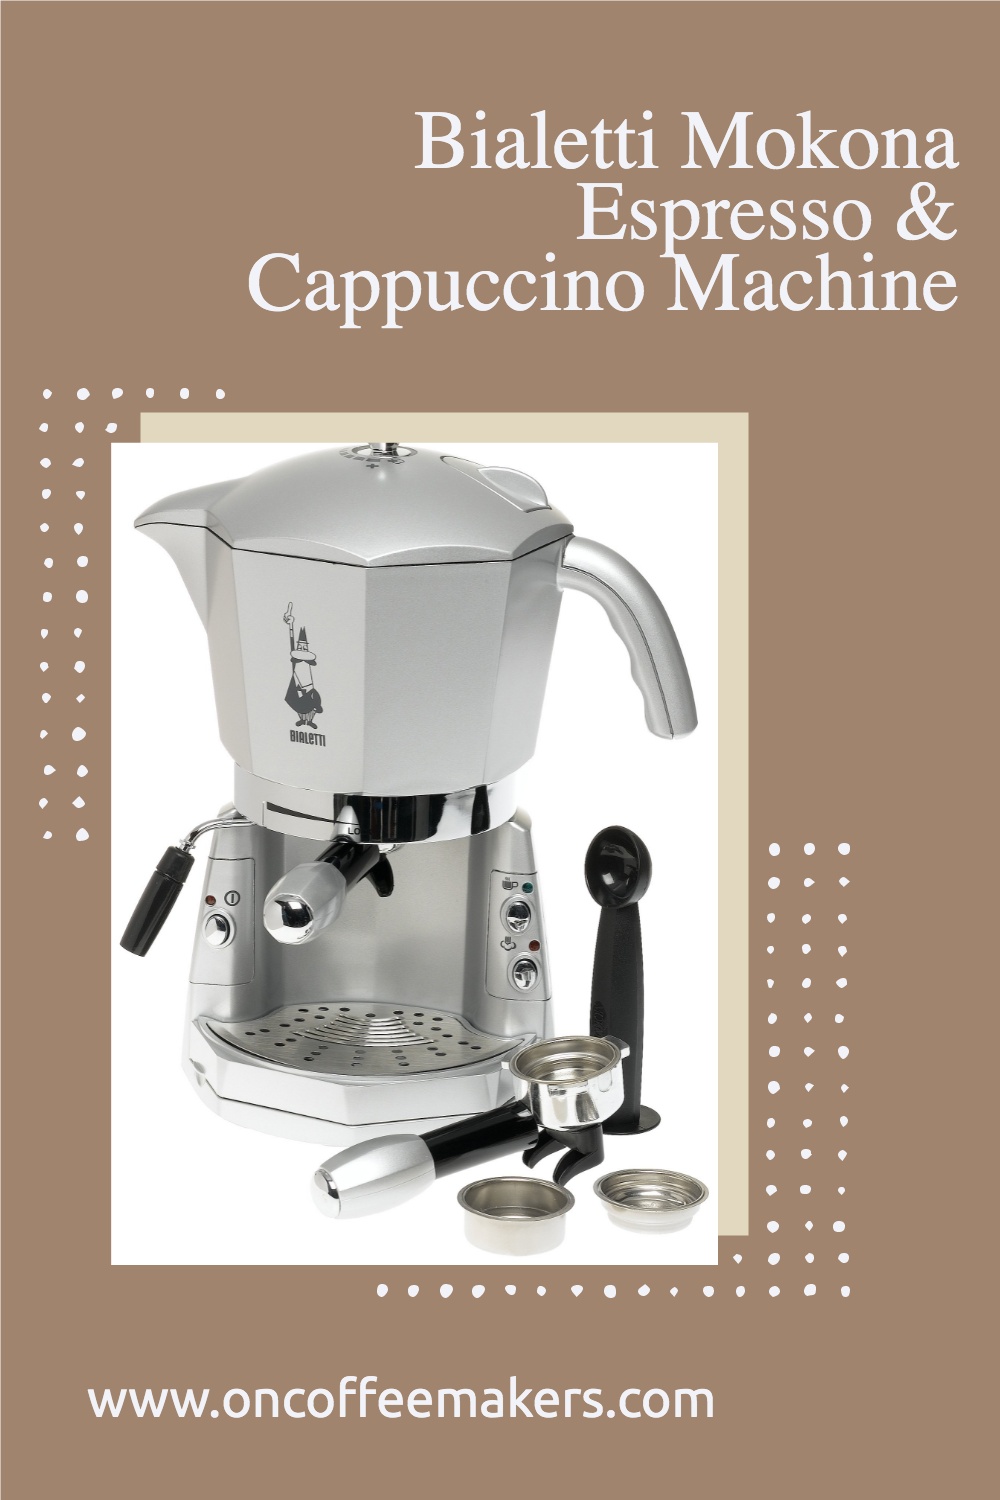 Bialetti Mokona Espresso & Cappuccino Machine